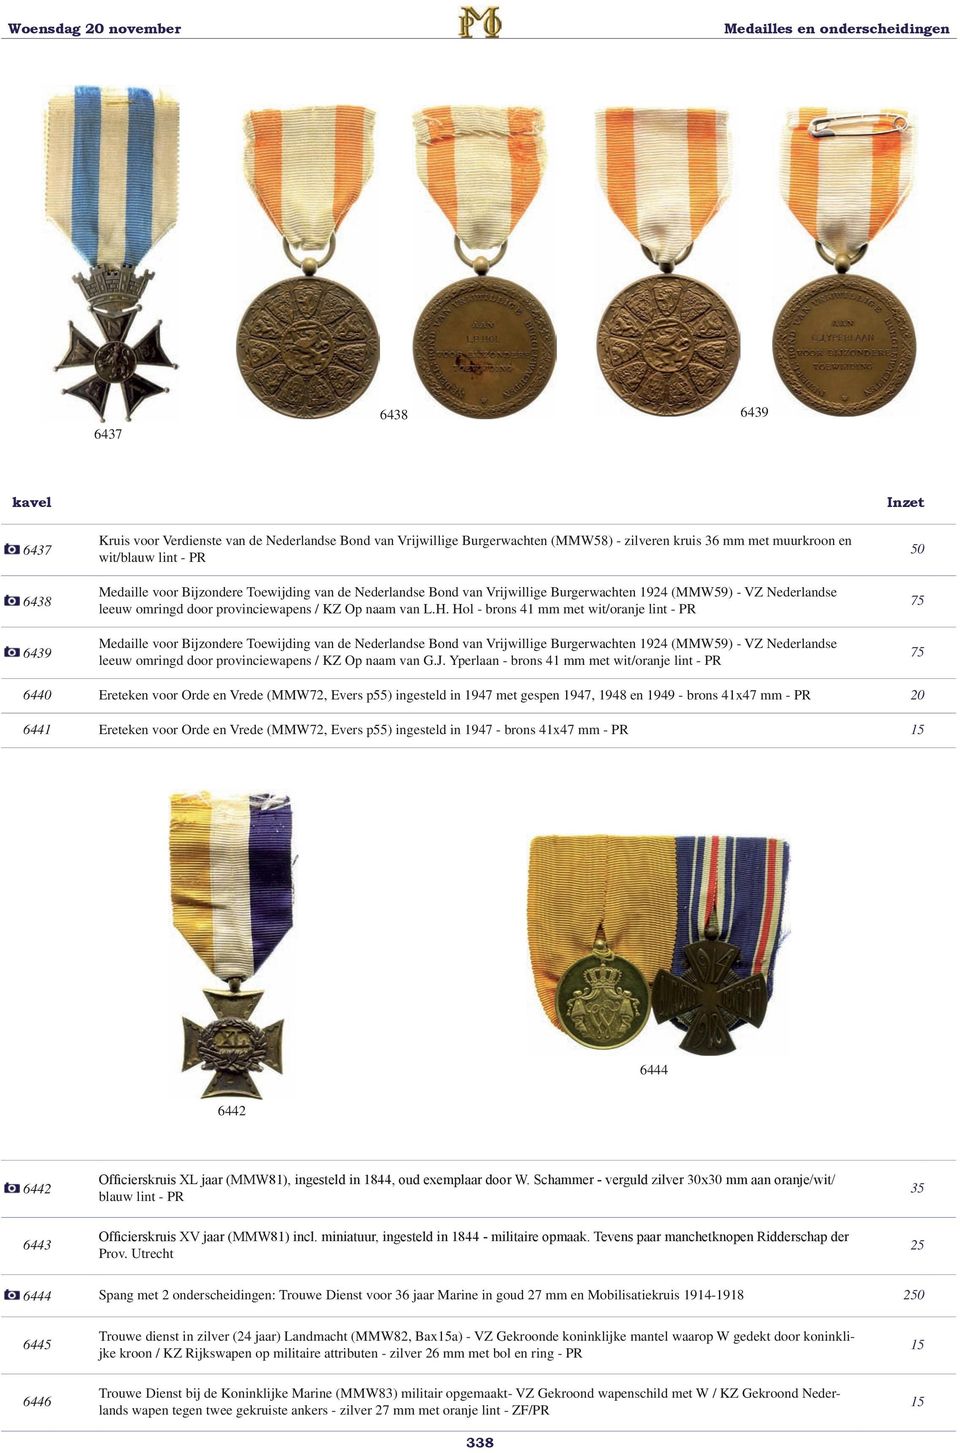 Hol - brons 41 mm met wit/oranje lint - PR Medaille voor Bijzondere Toewijding van de Nederlandse Bond van Vrijwillige Burgerwachten 1924 (MMW59) - VZ Nederlandse leeuw omringd door provinciewapens /